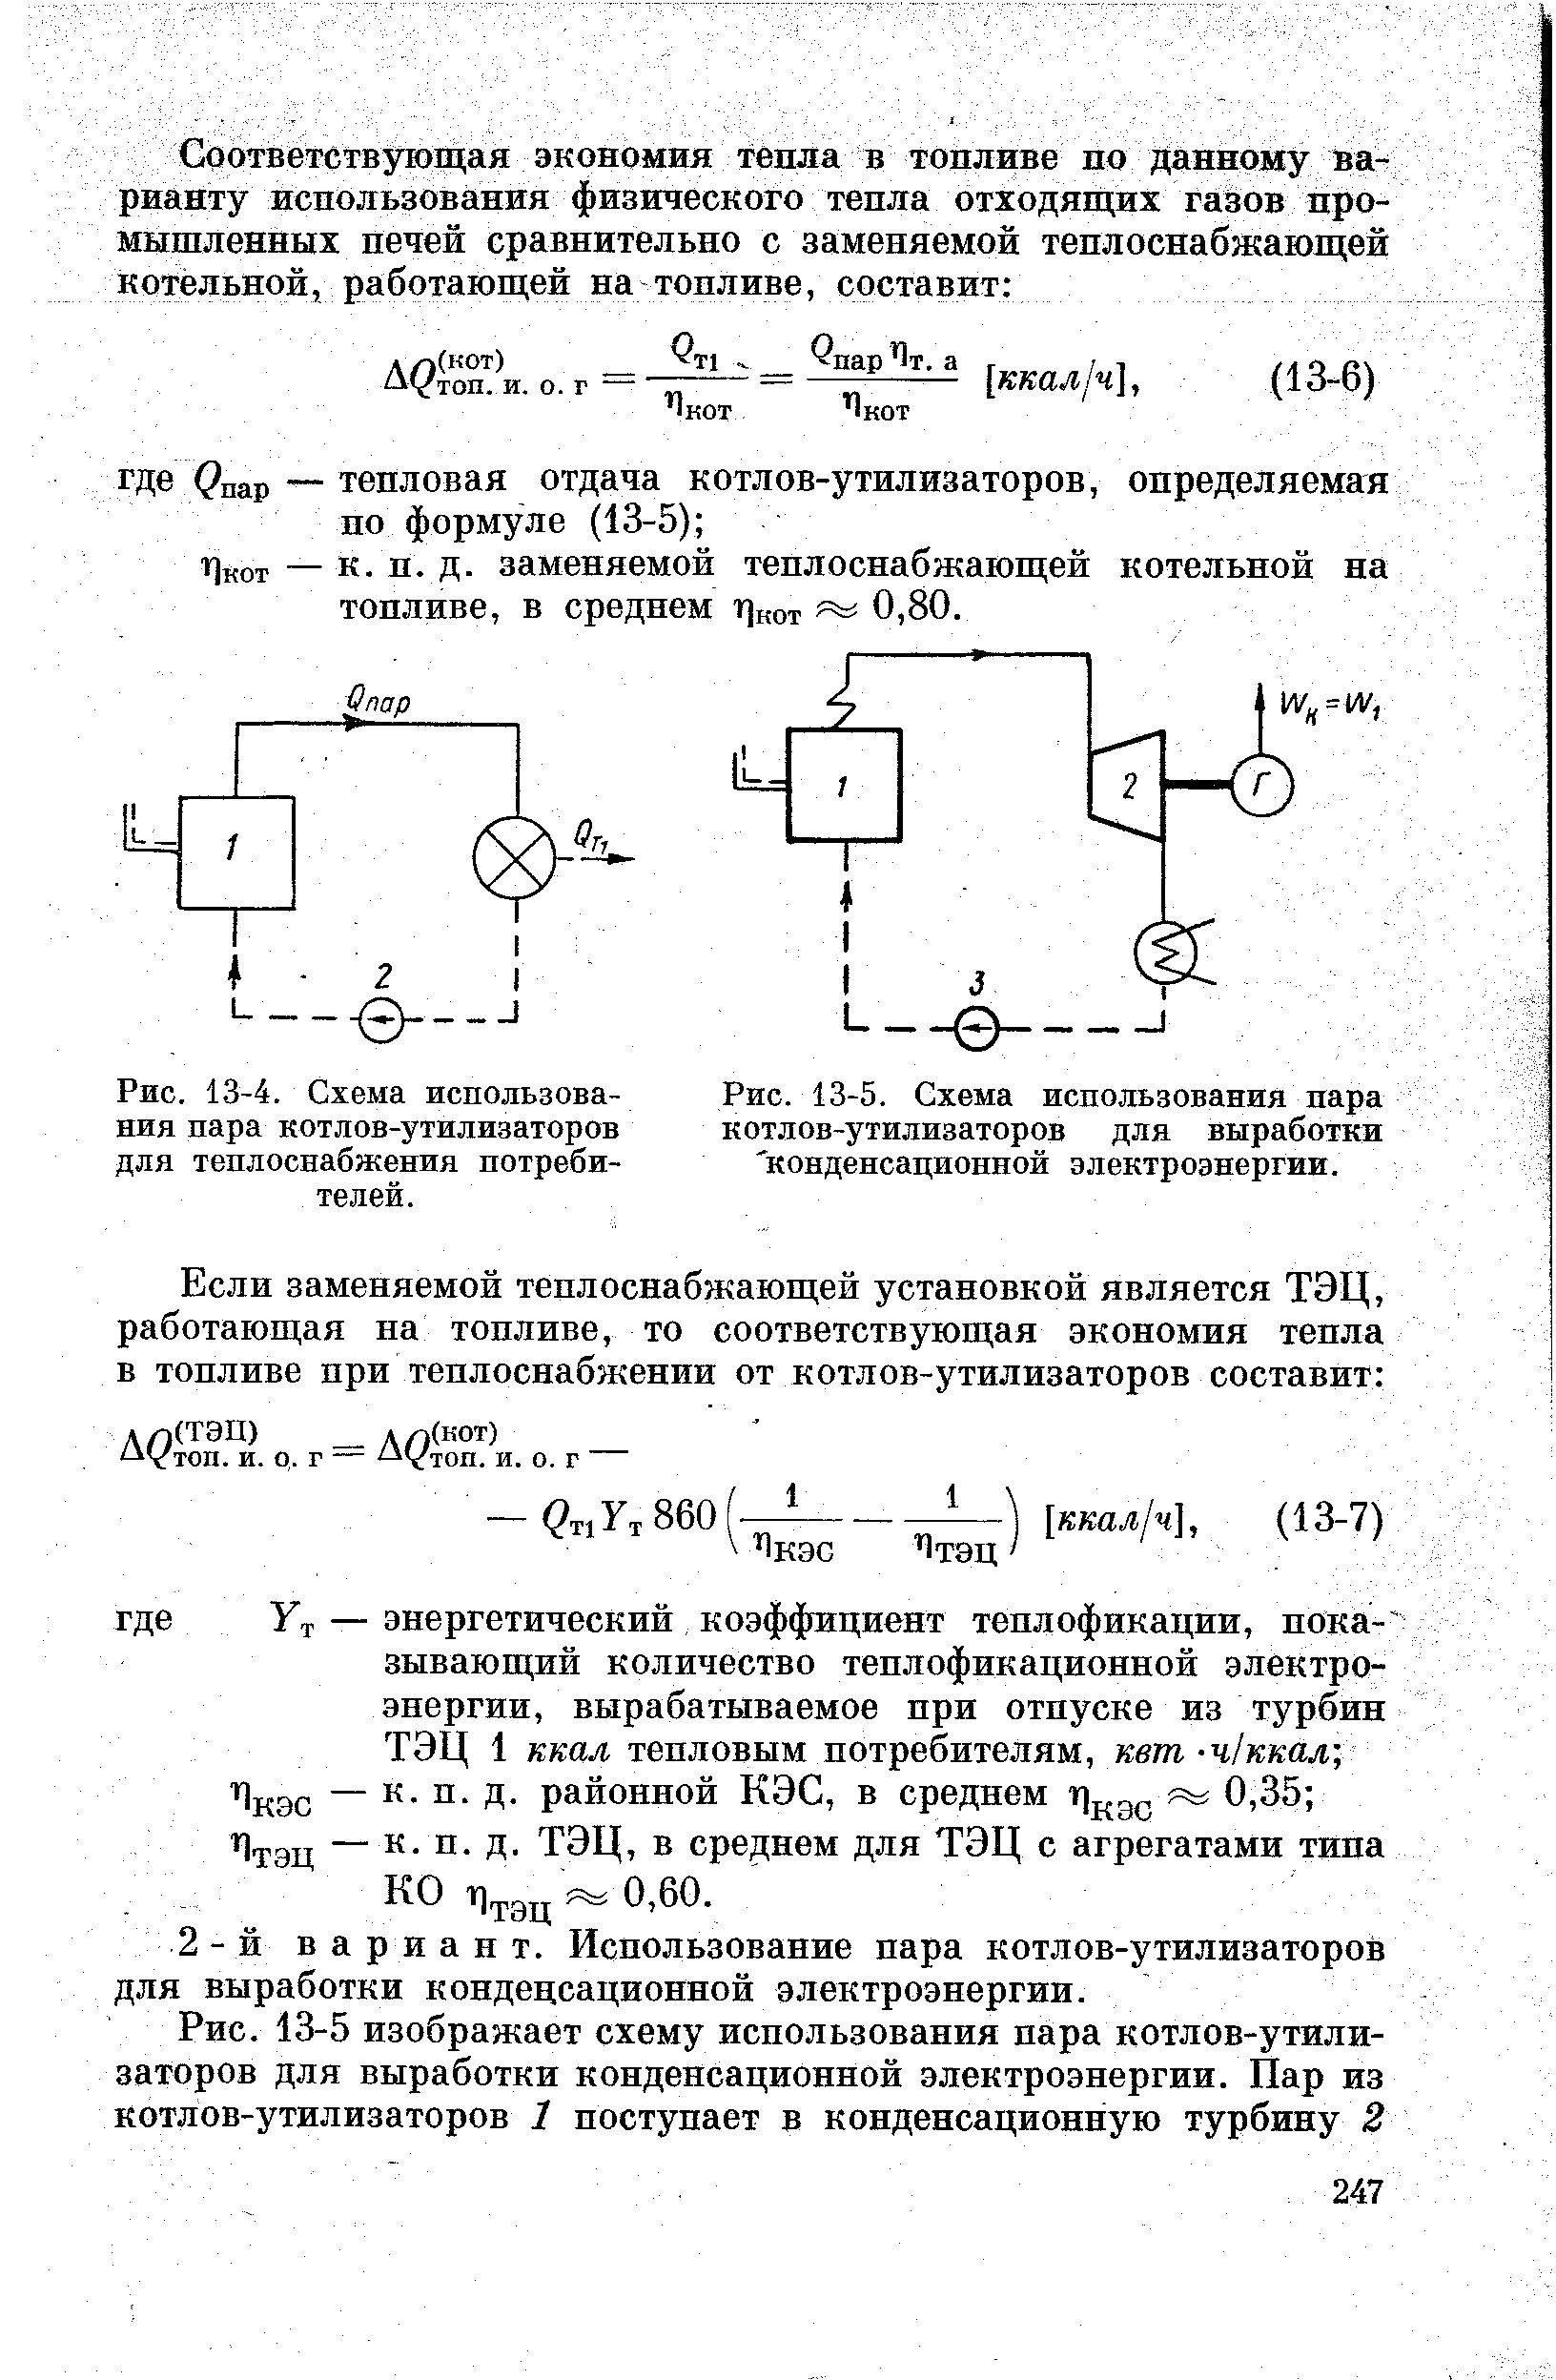 Рис. 13-5. Схема использования пара <a href="/info/778">котлов-утилизаторов</a> для выработки конденсационной электроэнергии.
